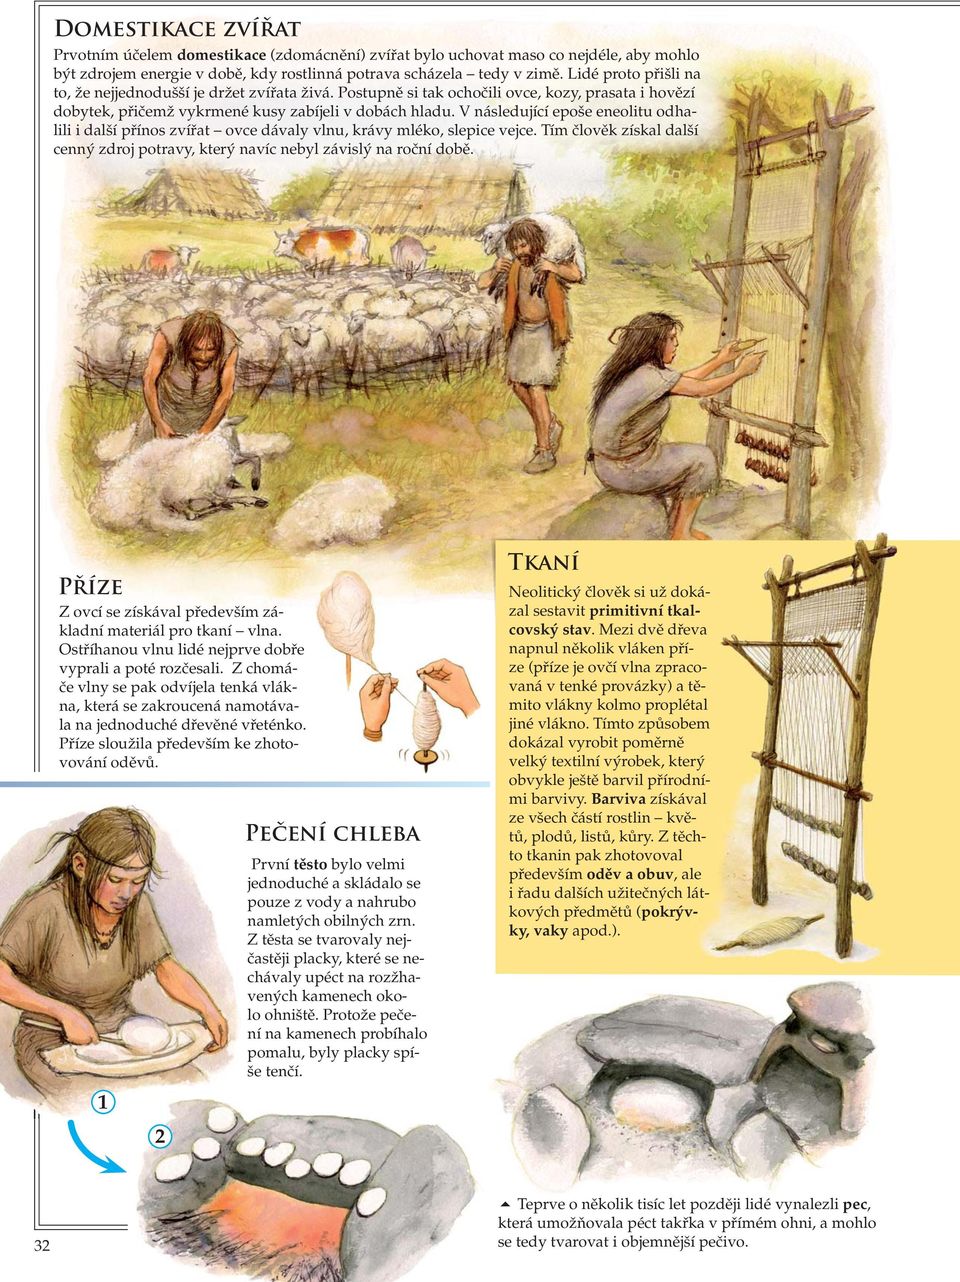 V následující epoše eneolitu odhalili i další přínos zvířat ovce dávaly vlnu, krávy mléko, slepice vejce. Tím člověk získal další cenný zdroj potravy, který navíc nebyl závislý na roční době.